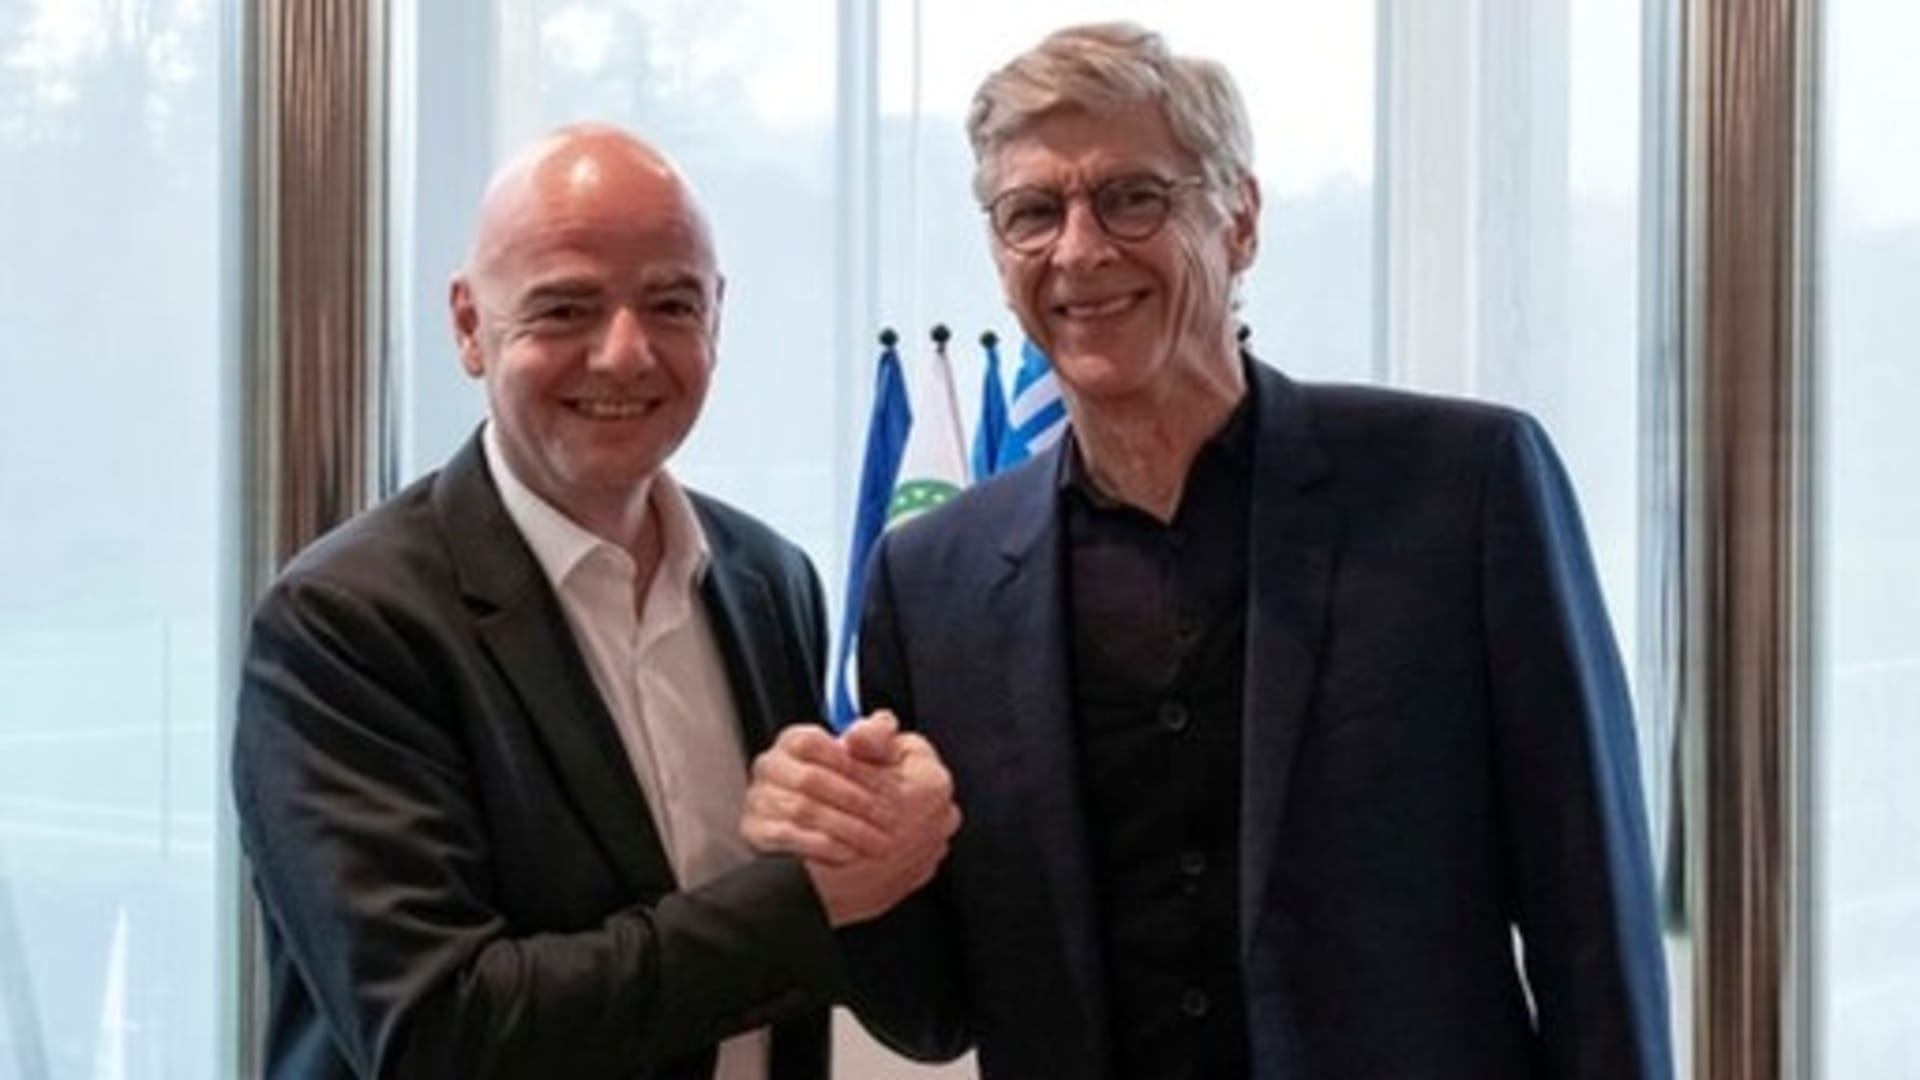 Prezident FIFA Gianni Infantino a Arsène Wenger, ředitel FIFA pro rozvoj fotbalu, pózují po společném jednání.